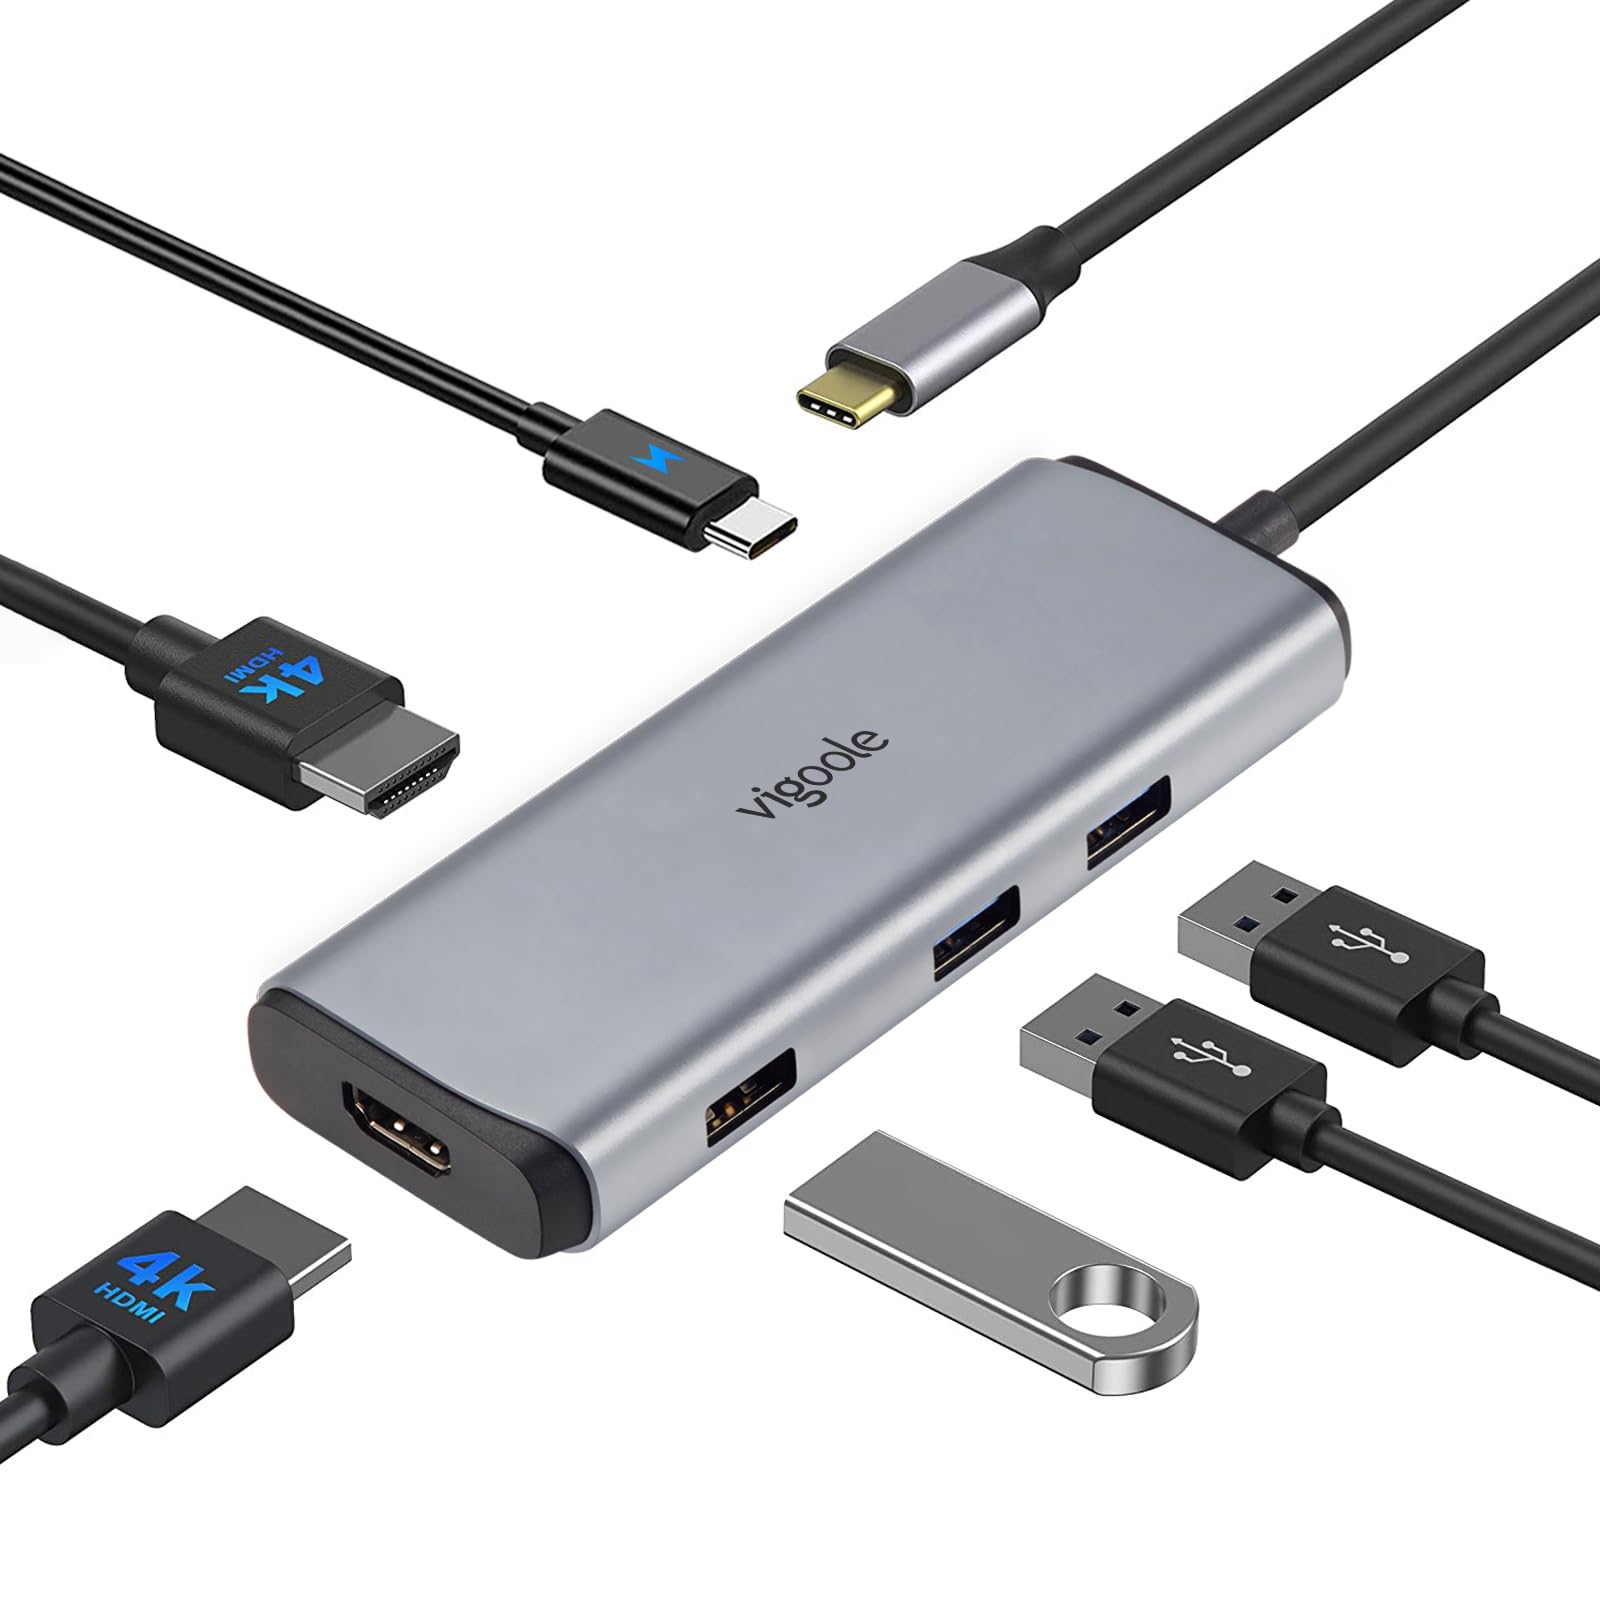 Vigoole USB C ハブ デュアルモニター 6 IN 1 Type C ハブ マルチポートアダプター デュアル4K HDMI 3つのUSBポート PD充電 ユニバーサルUSB-C ハブ対応 Dell/HP/Lenovo/Surface用適格請求書